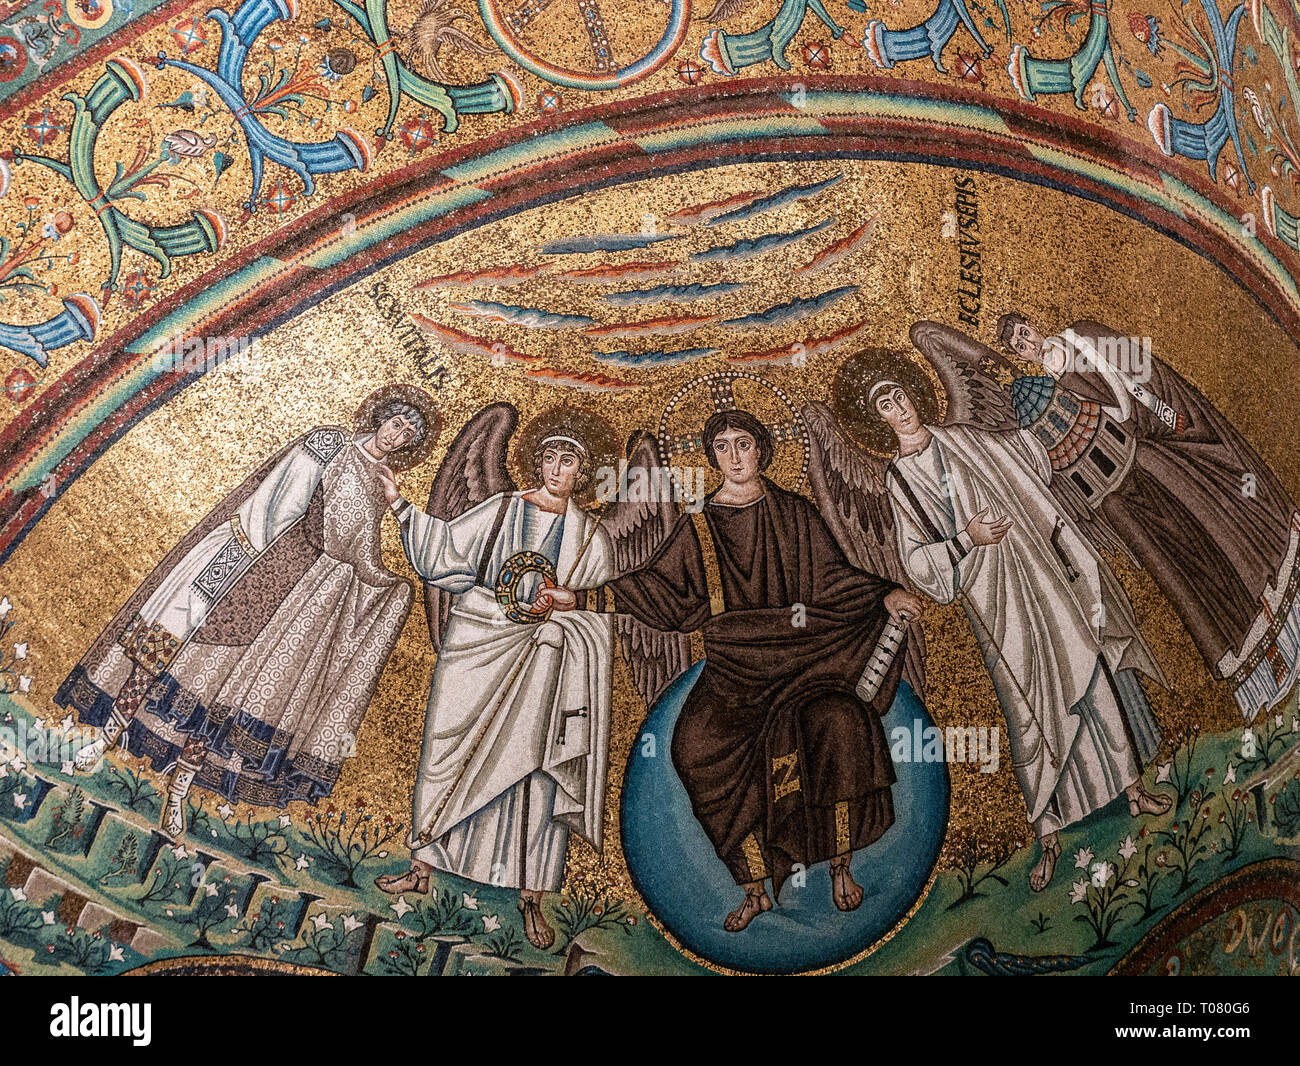 L'Italie, l'Emilie Romagne, Ravenne, mosaïques byzantines de la Basilique de San Vitale Banque D'Images